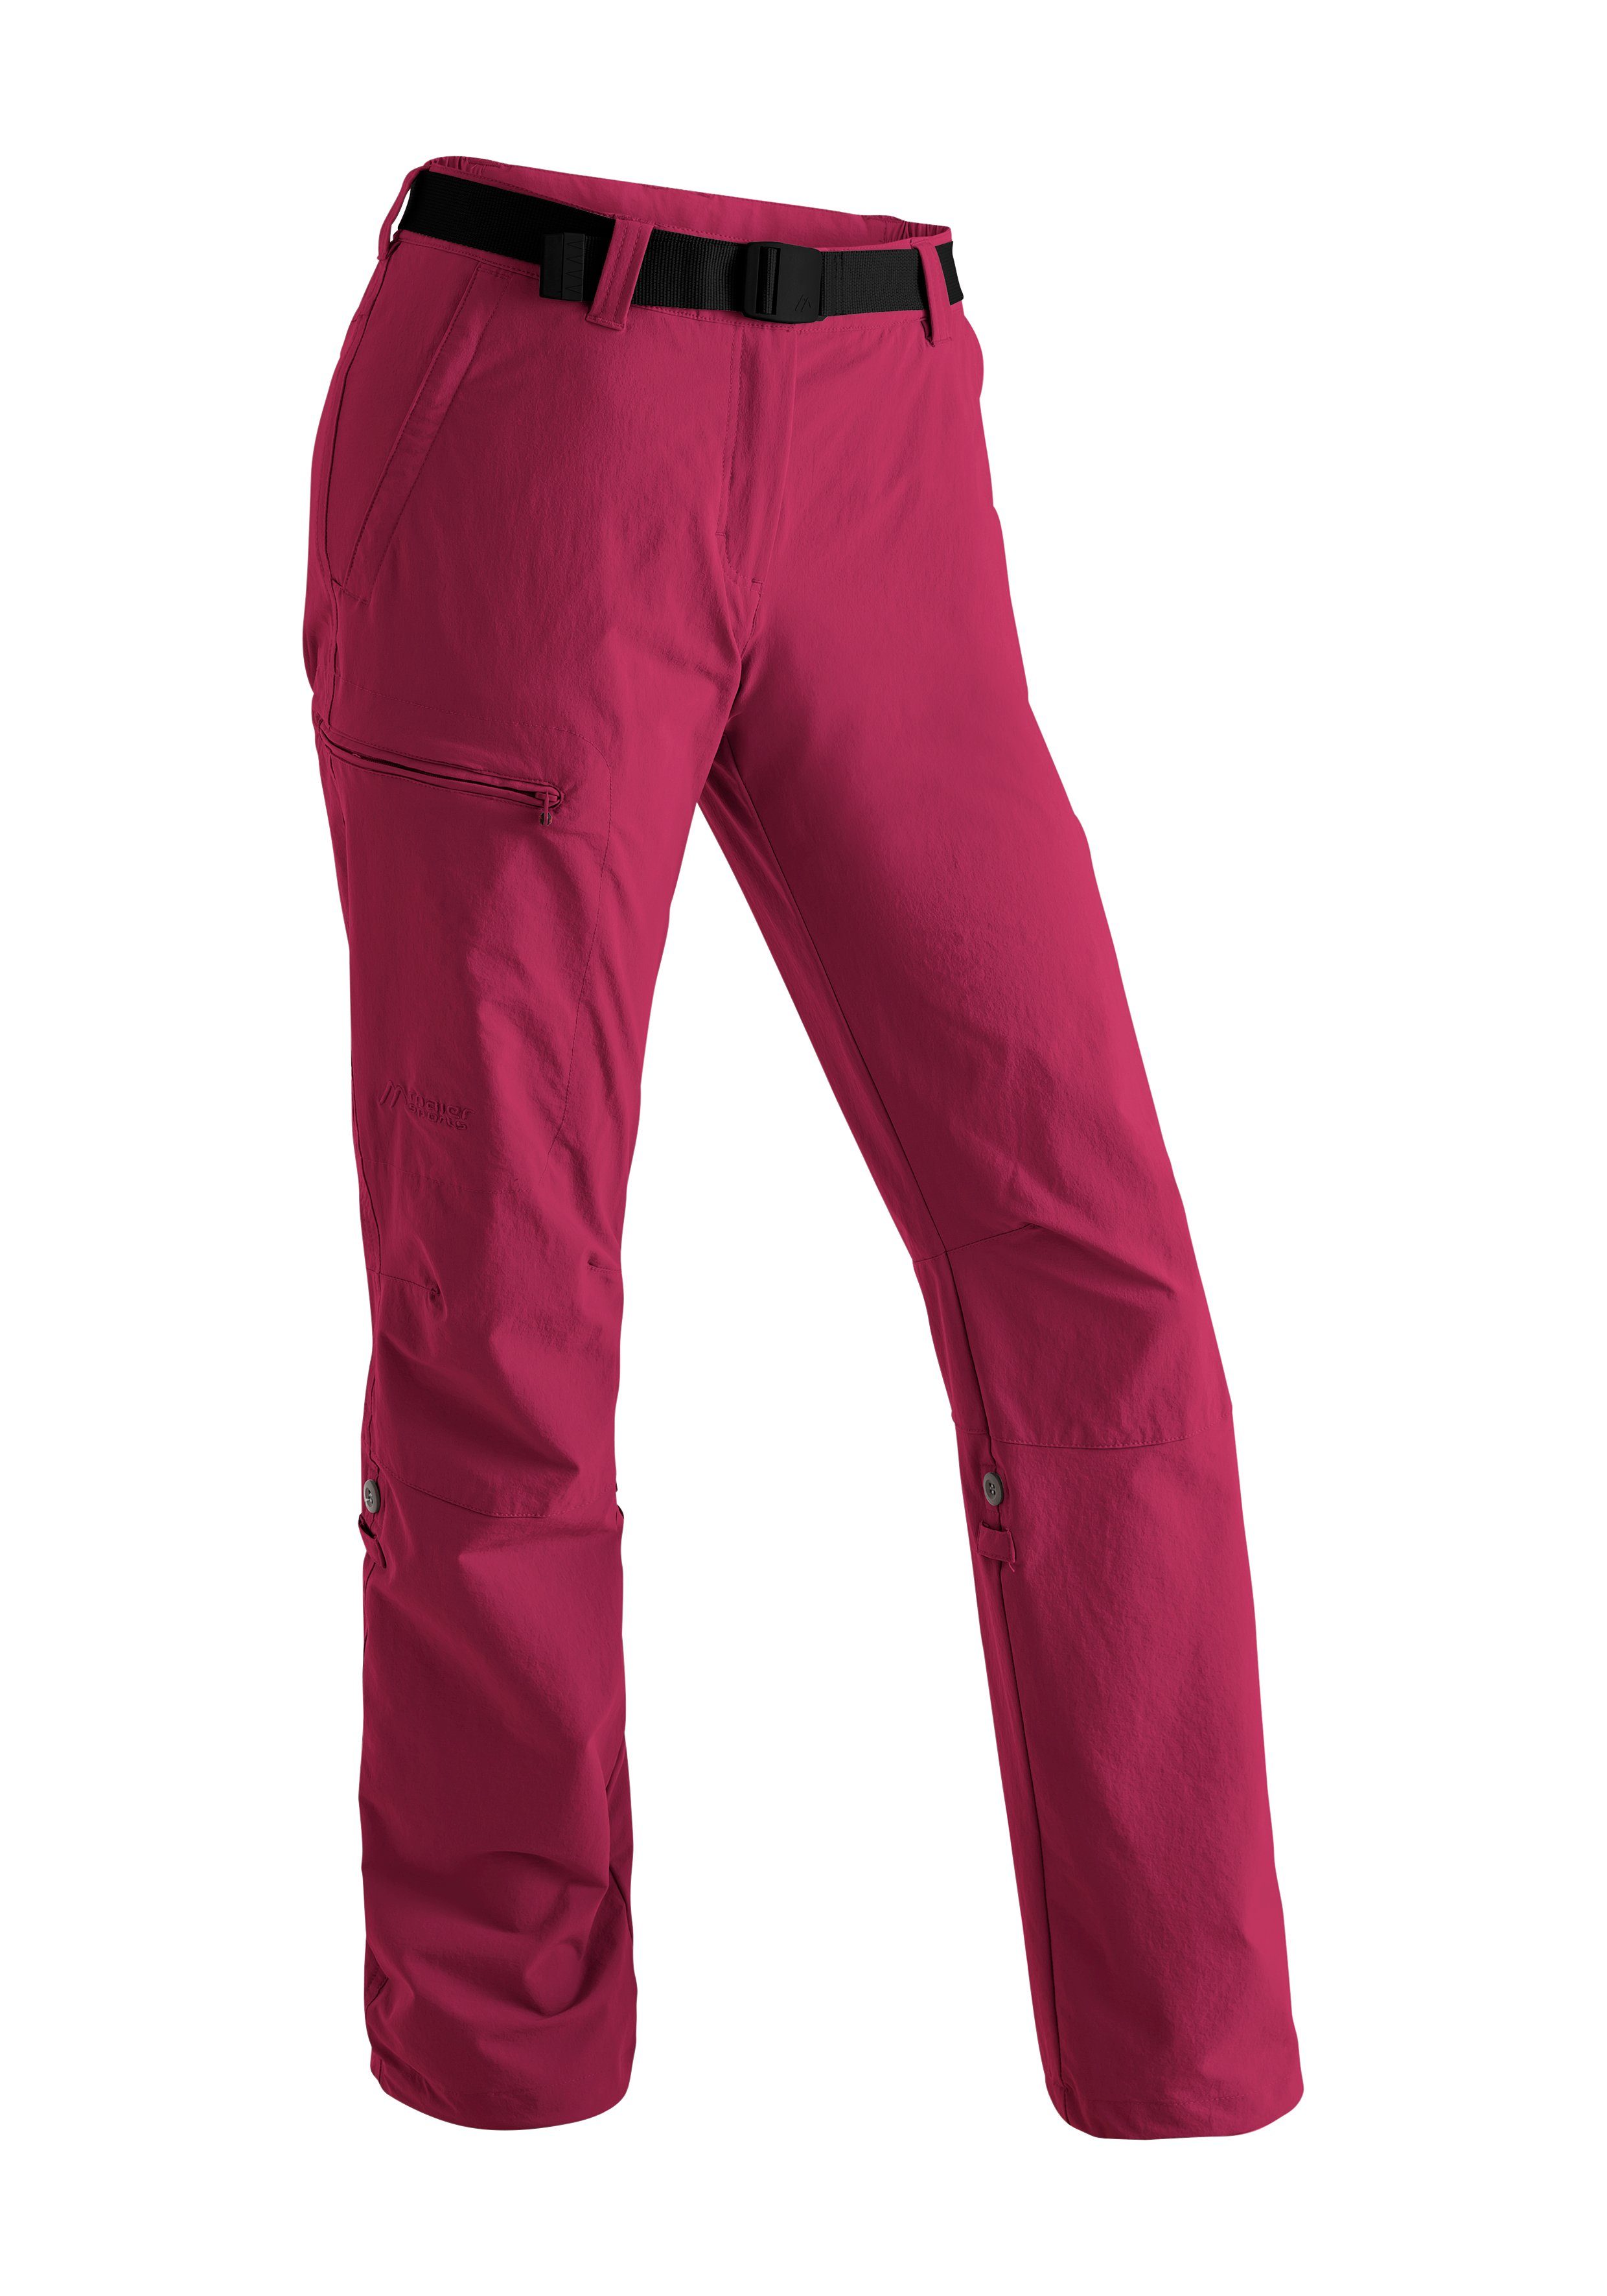 Maier Sports Funktionshose Lulaka Damen Wanderhose, atmungsaktive Outdoor-Hose mit Roll up Funktion purpurrot